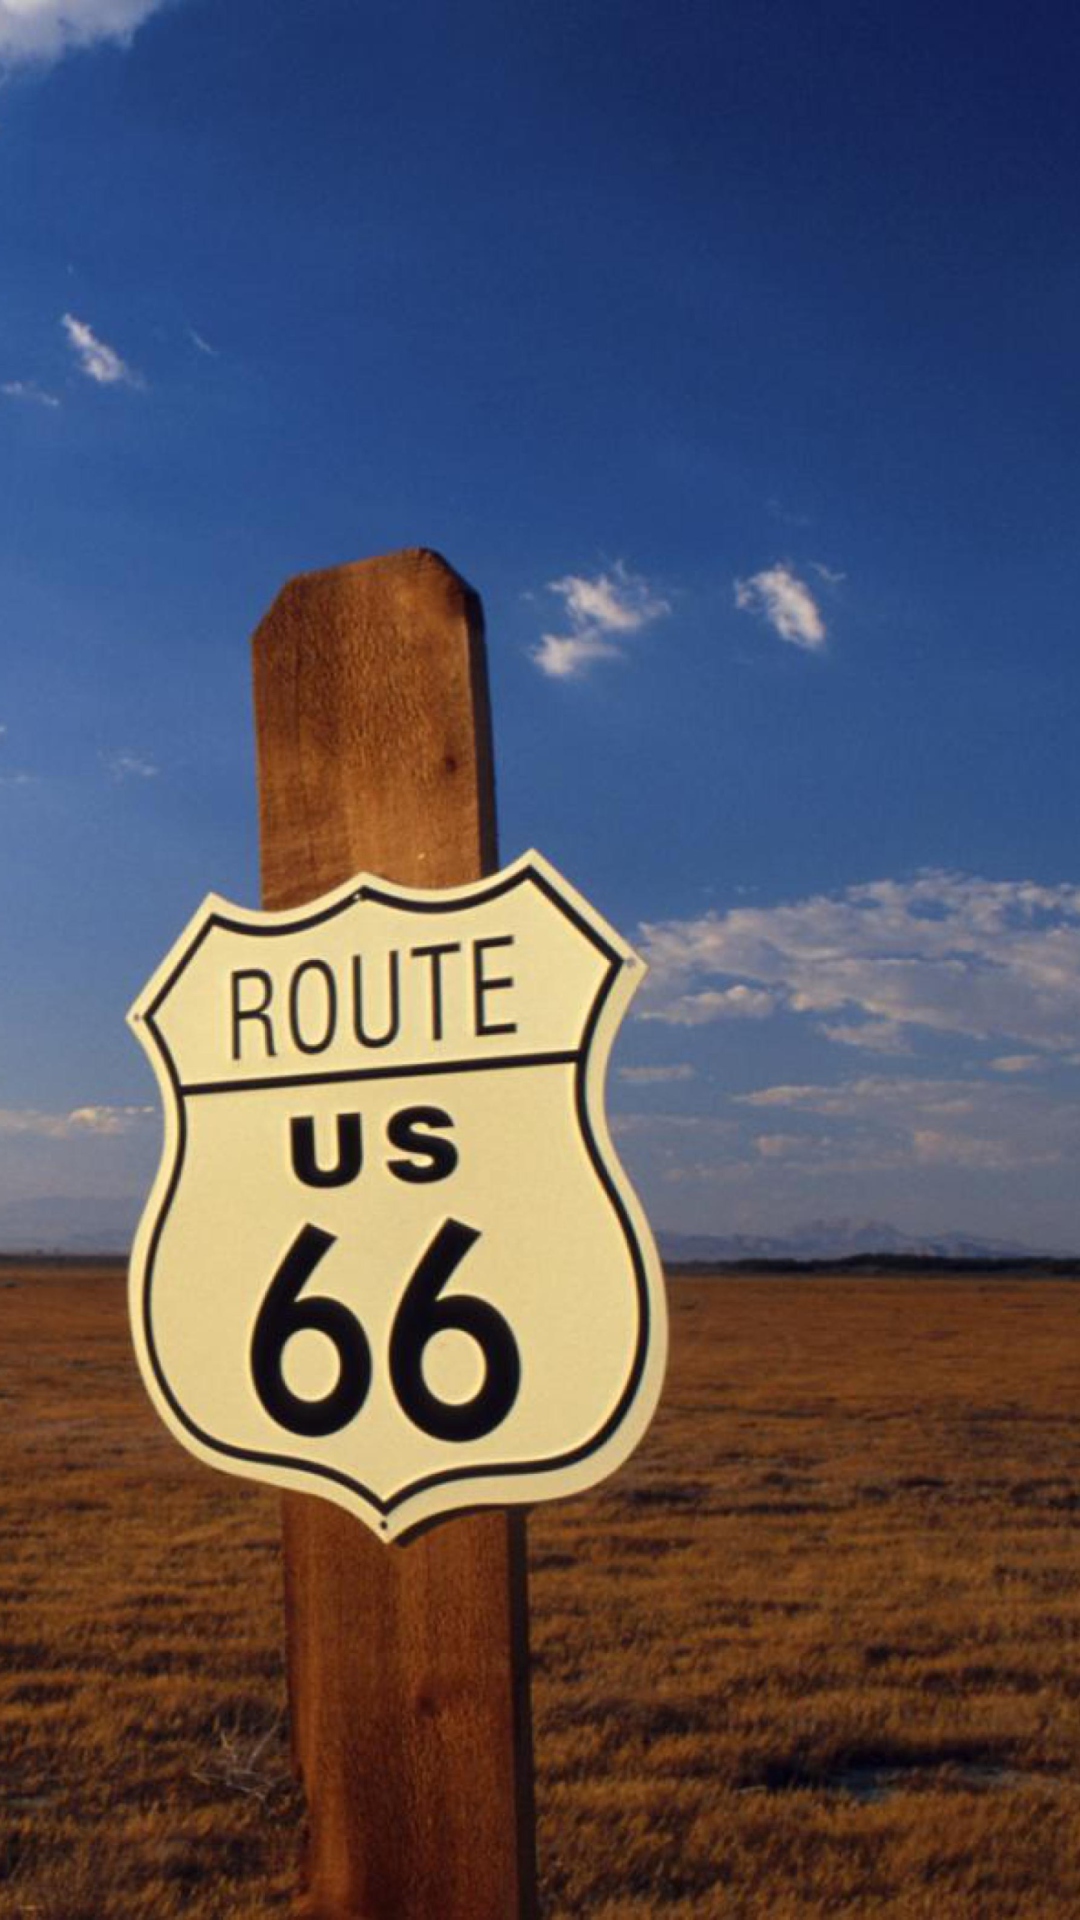 Sfondi America's Most Famous Route 66 1080x1920